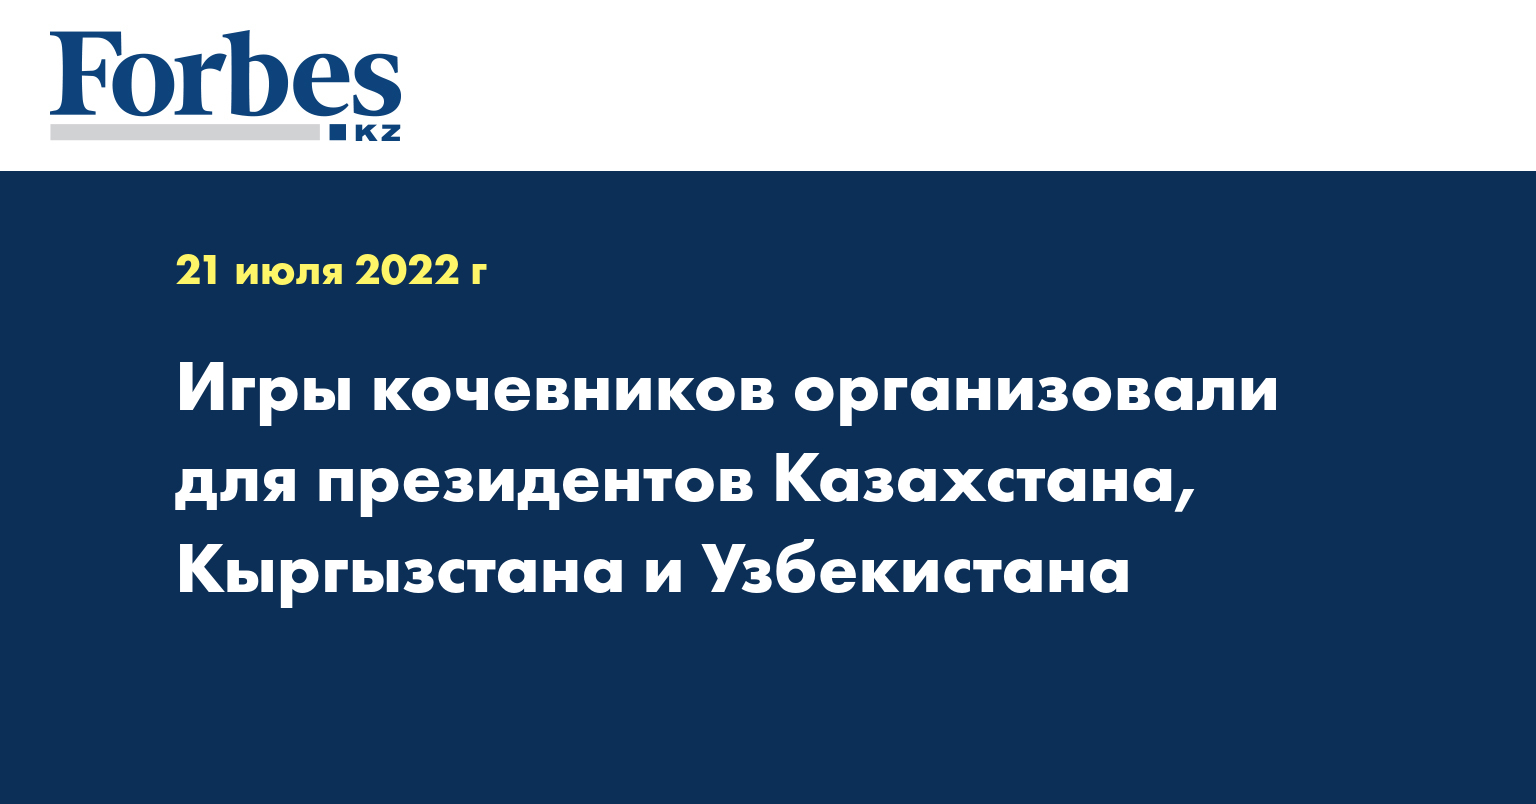 Игры кочевников организовали для президентов Казахстана, Кыргызстана и Узбекистана